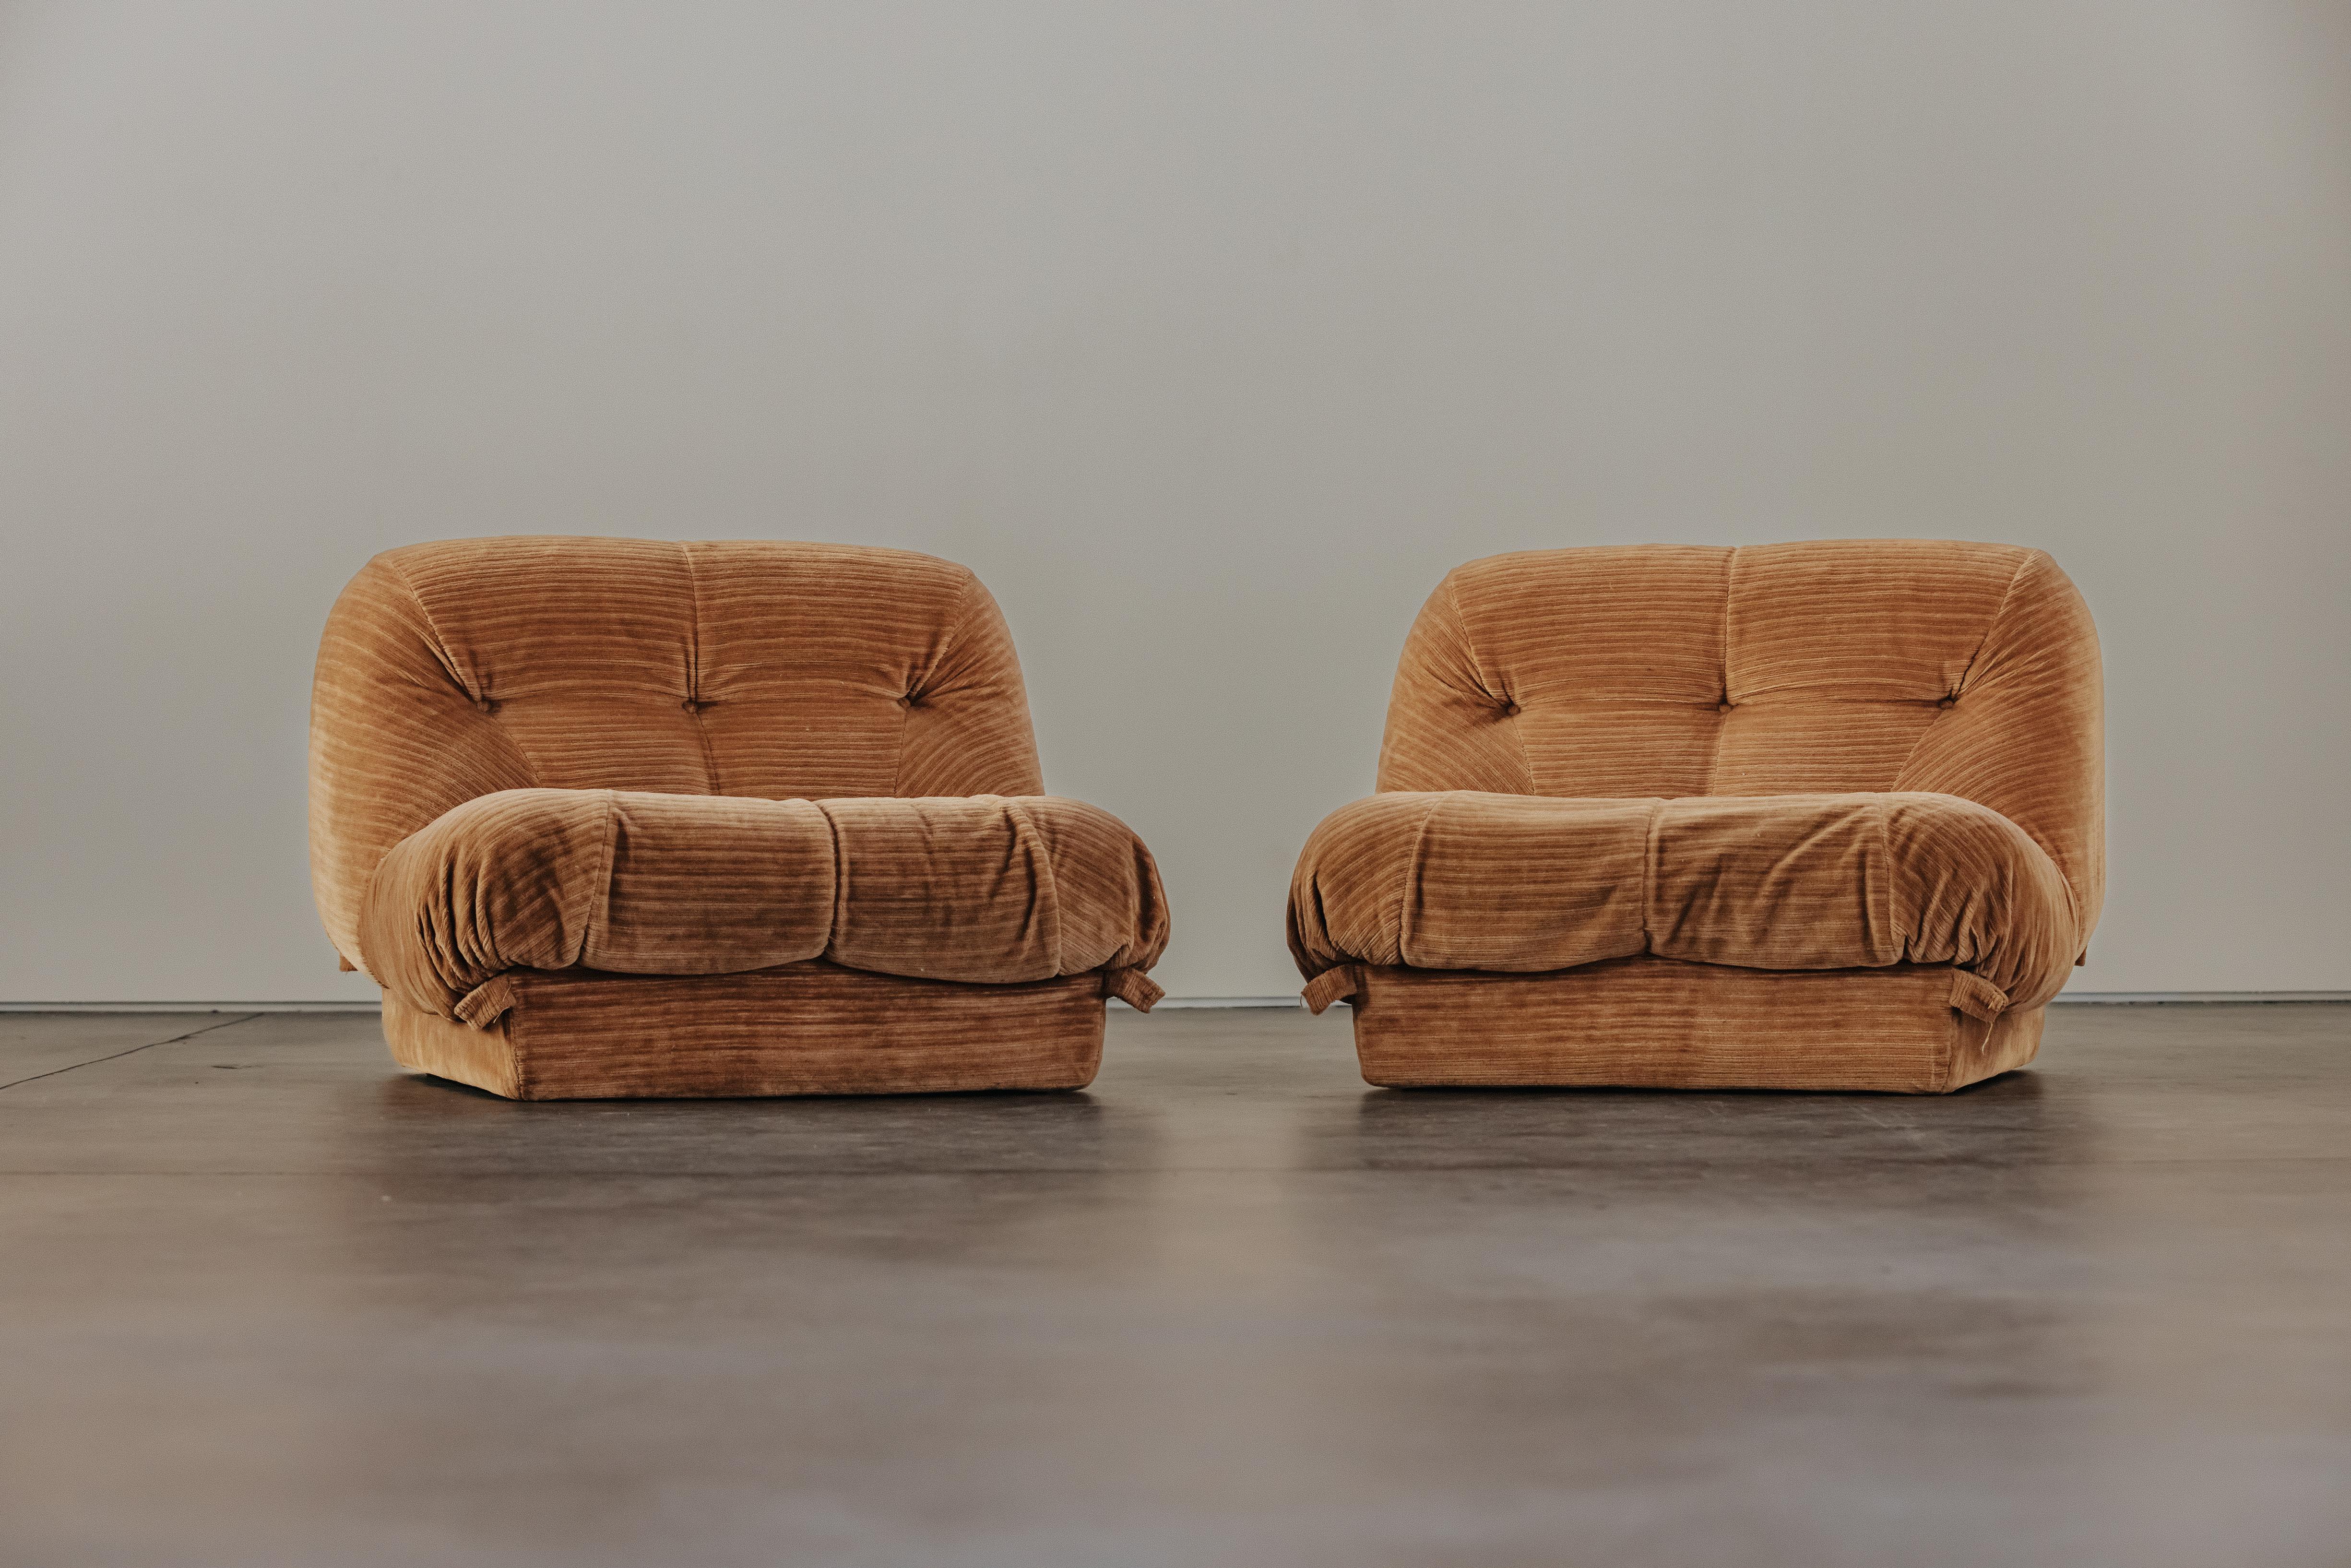 Vintage Pair of Nuvolone Lounge Chairs From Padova, Italy 1970s.  Garniture d'origine en velours côtelé brun doré.  Excellent état.